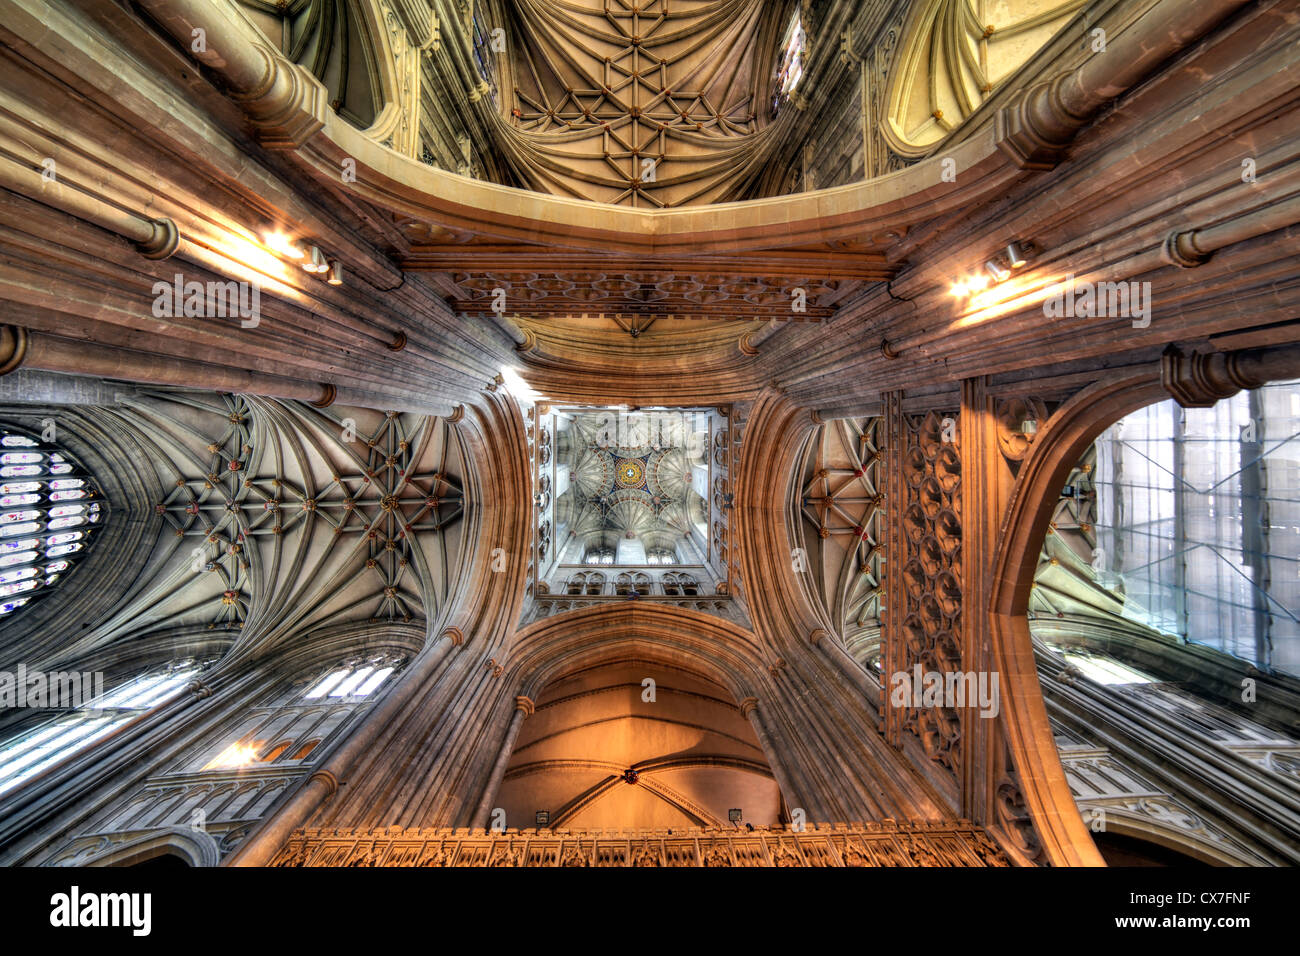 Intérieur de la Cathédrale de Canterbury, Canterbury, Kent, England, UK Banque D'Images